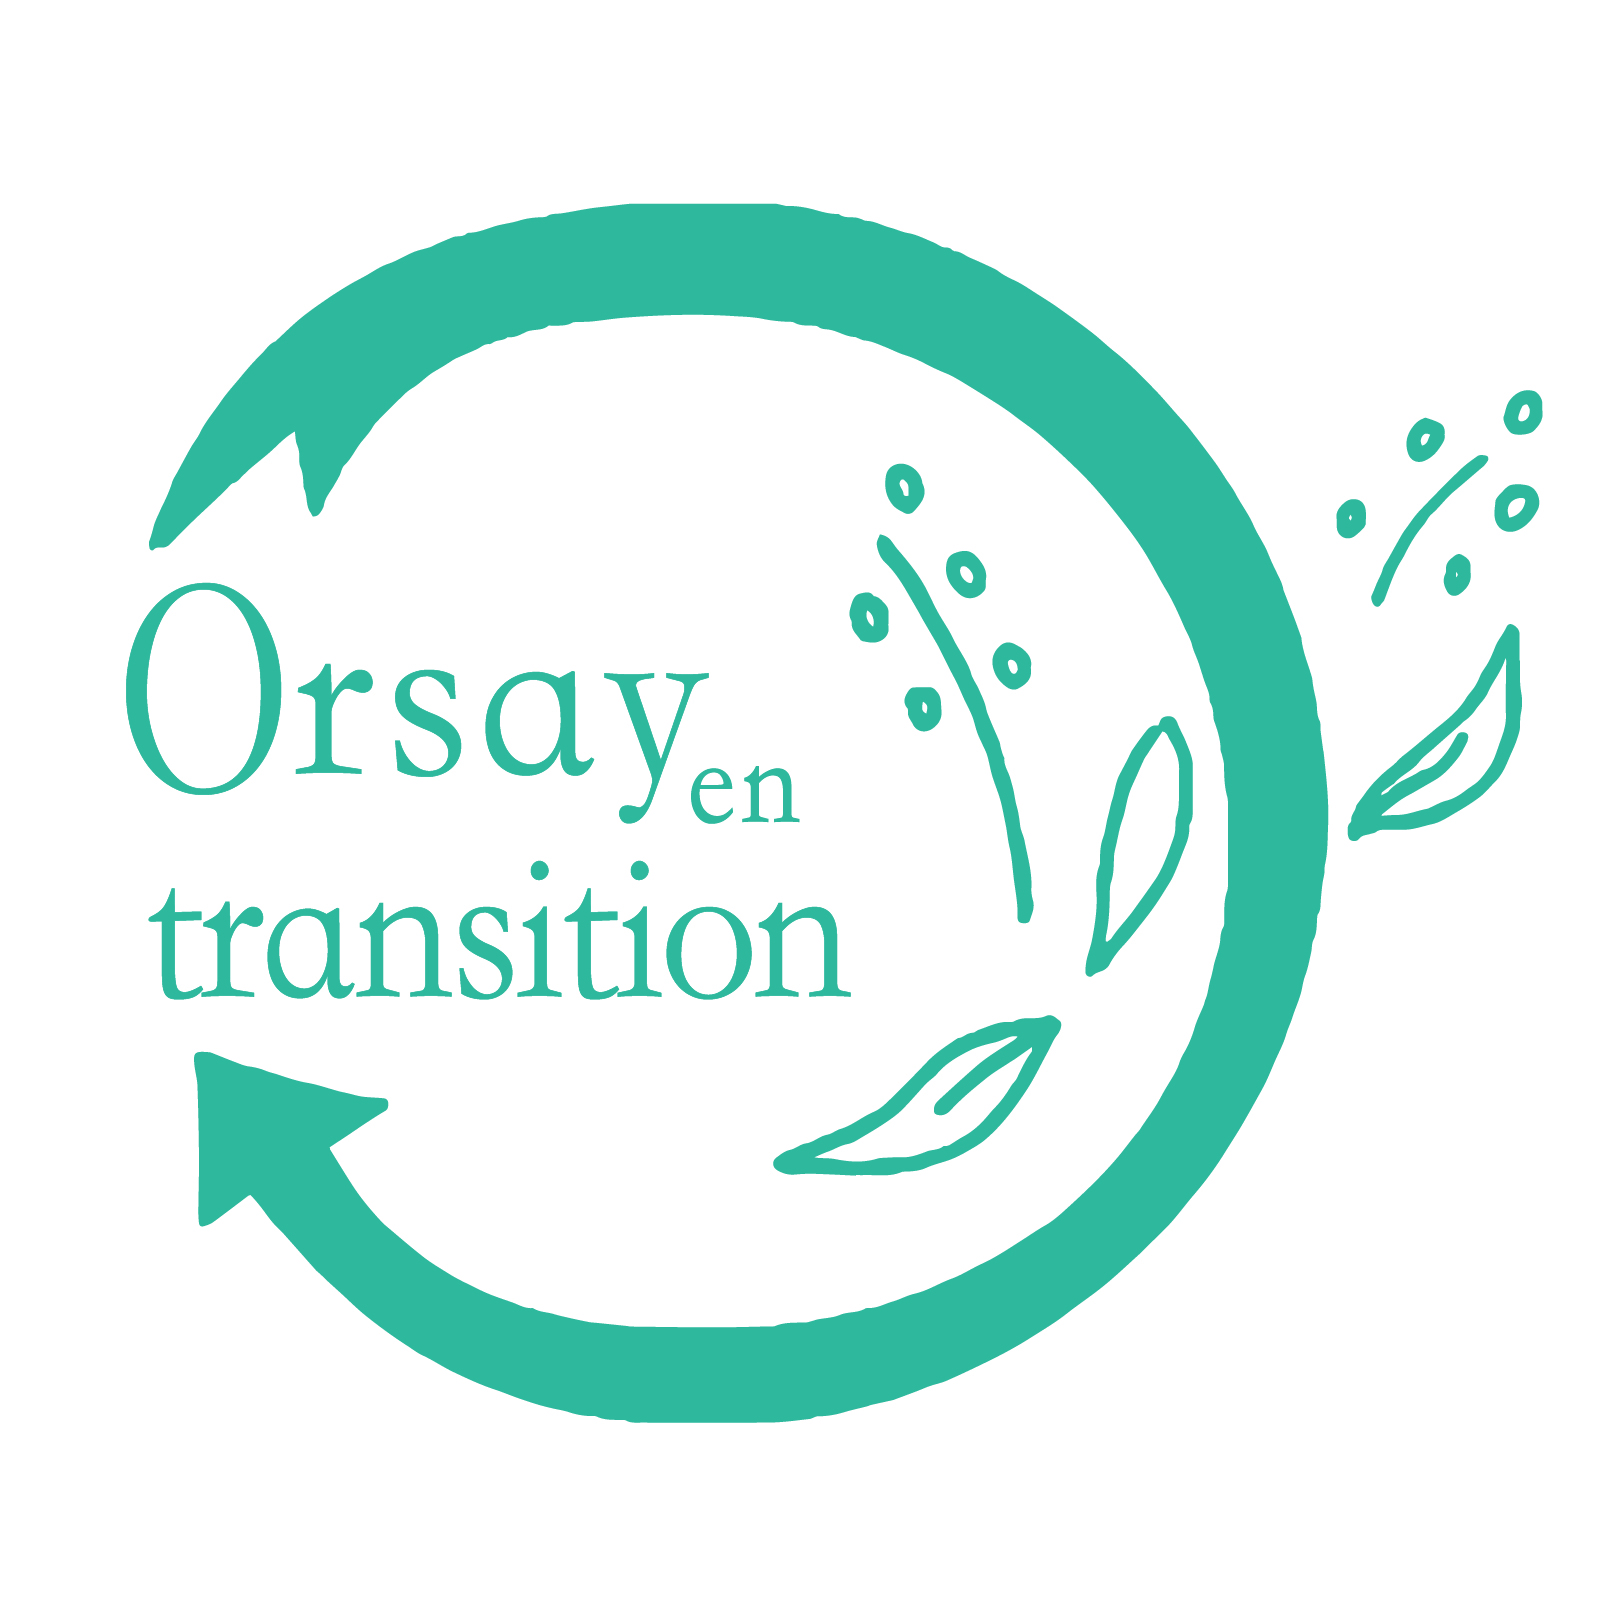 Association Orsay en transition